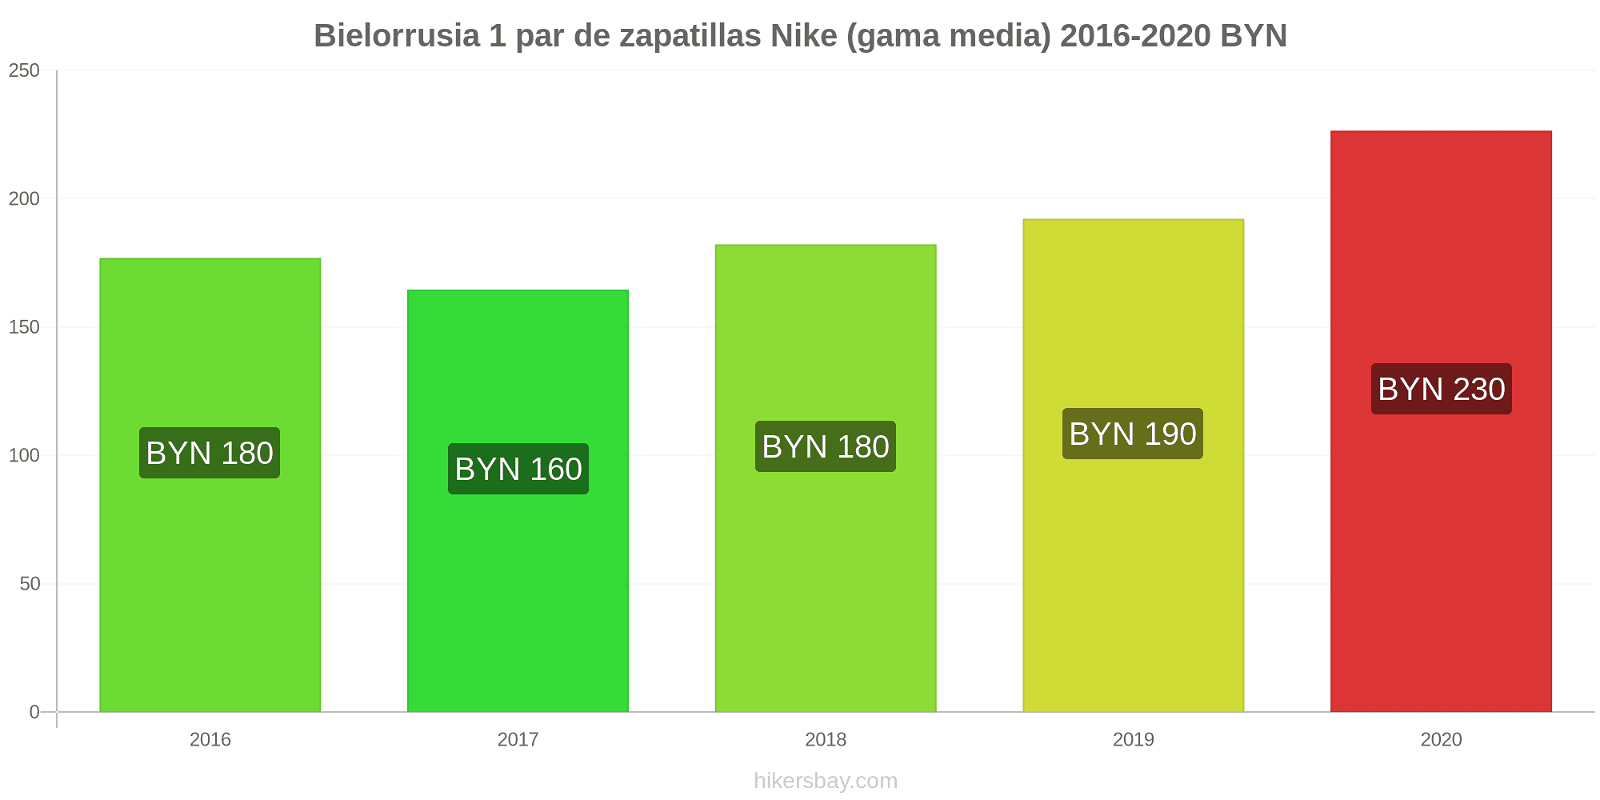 Bielorrusia cambios de precios 1 par de zapatillas Nike (gama media) hikersbay.com